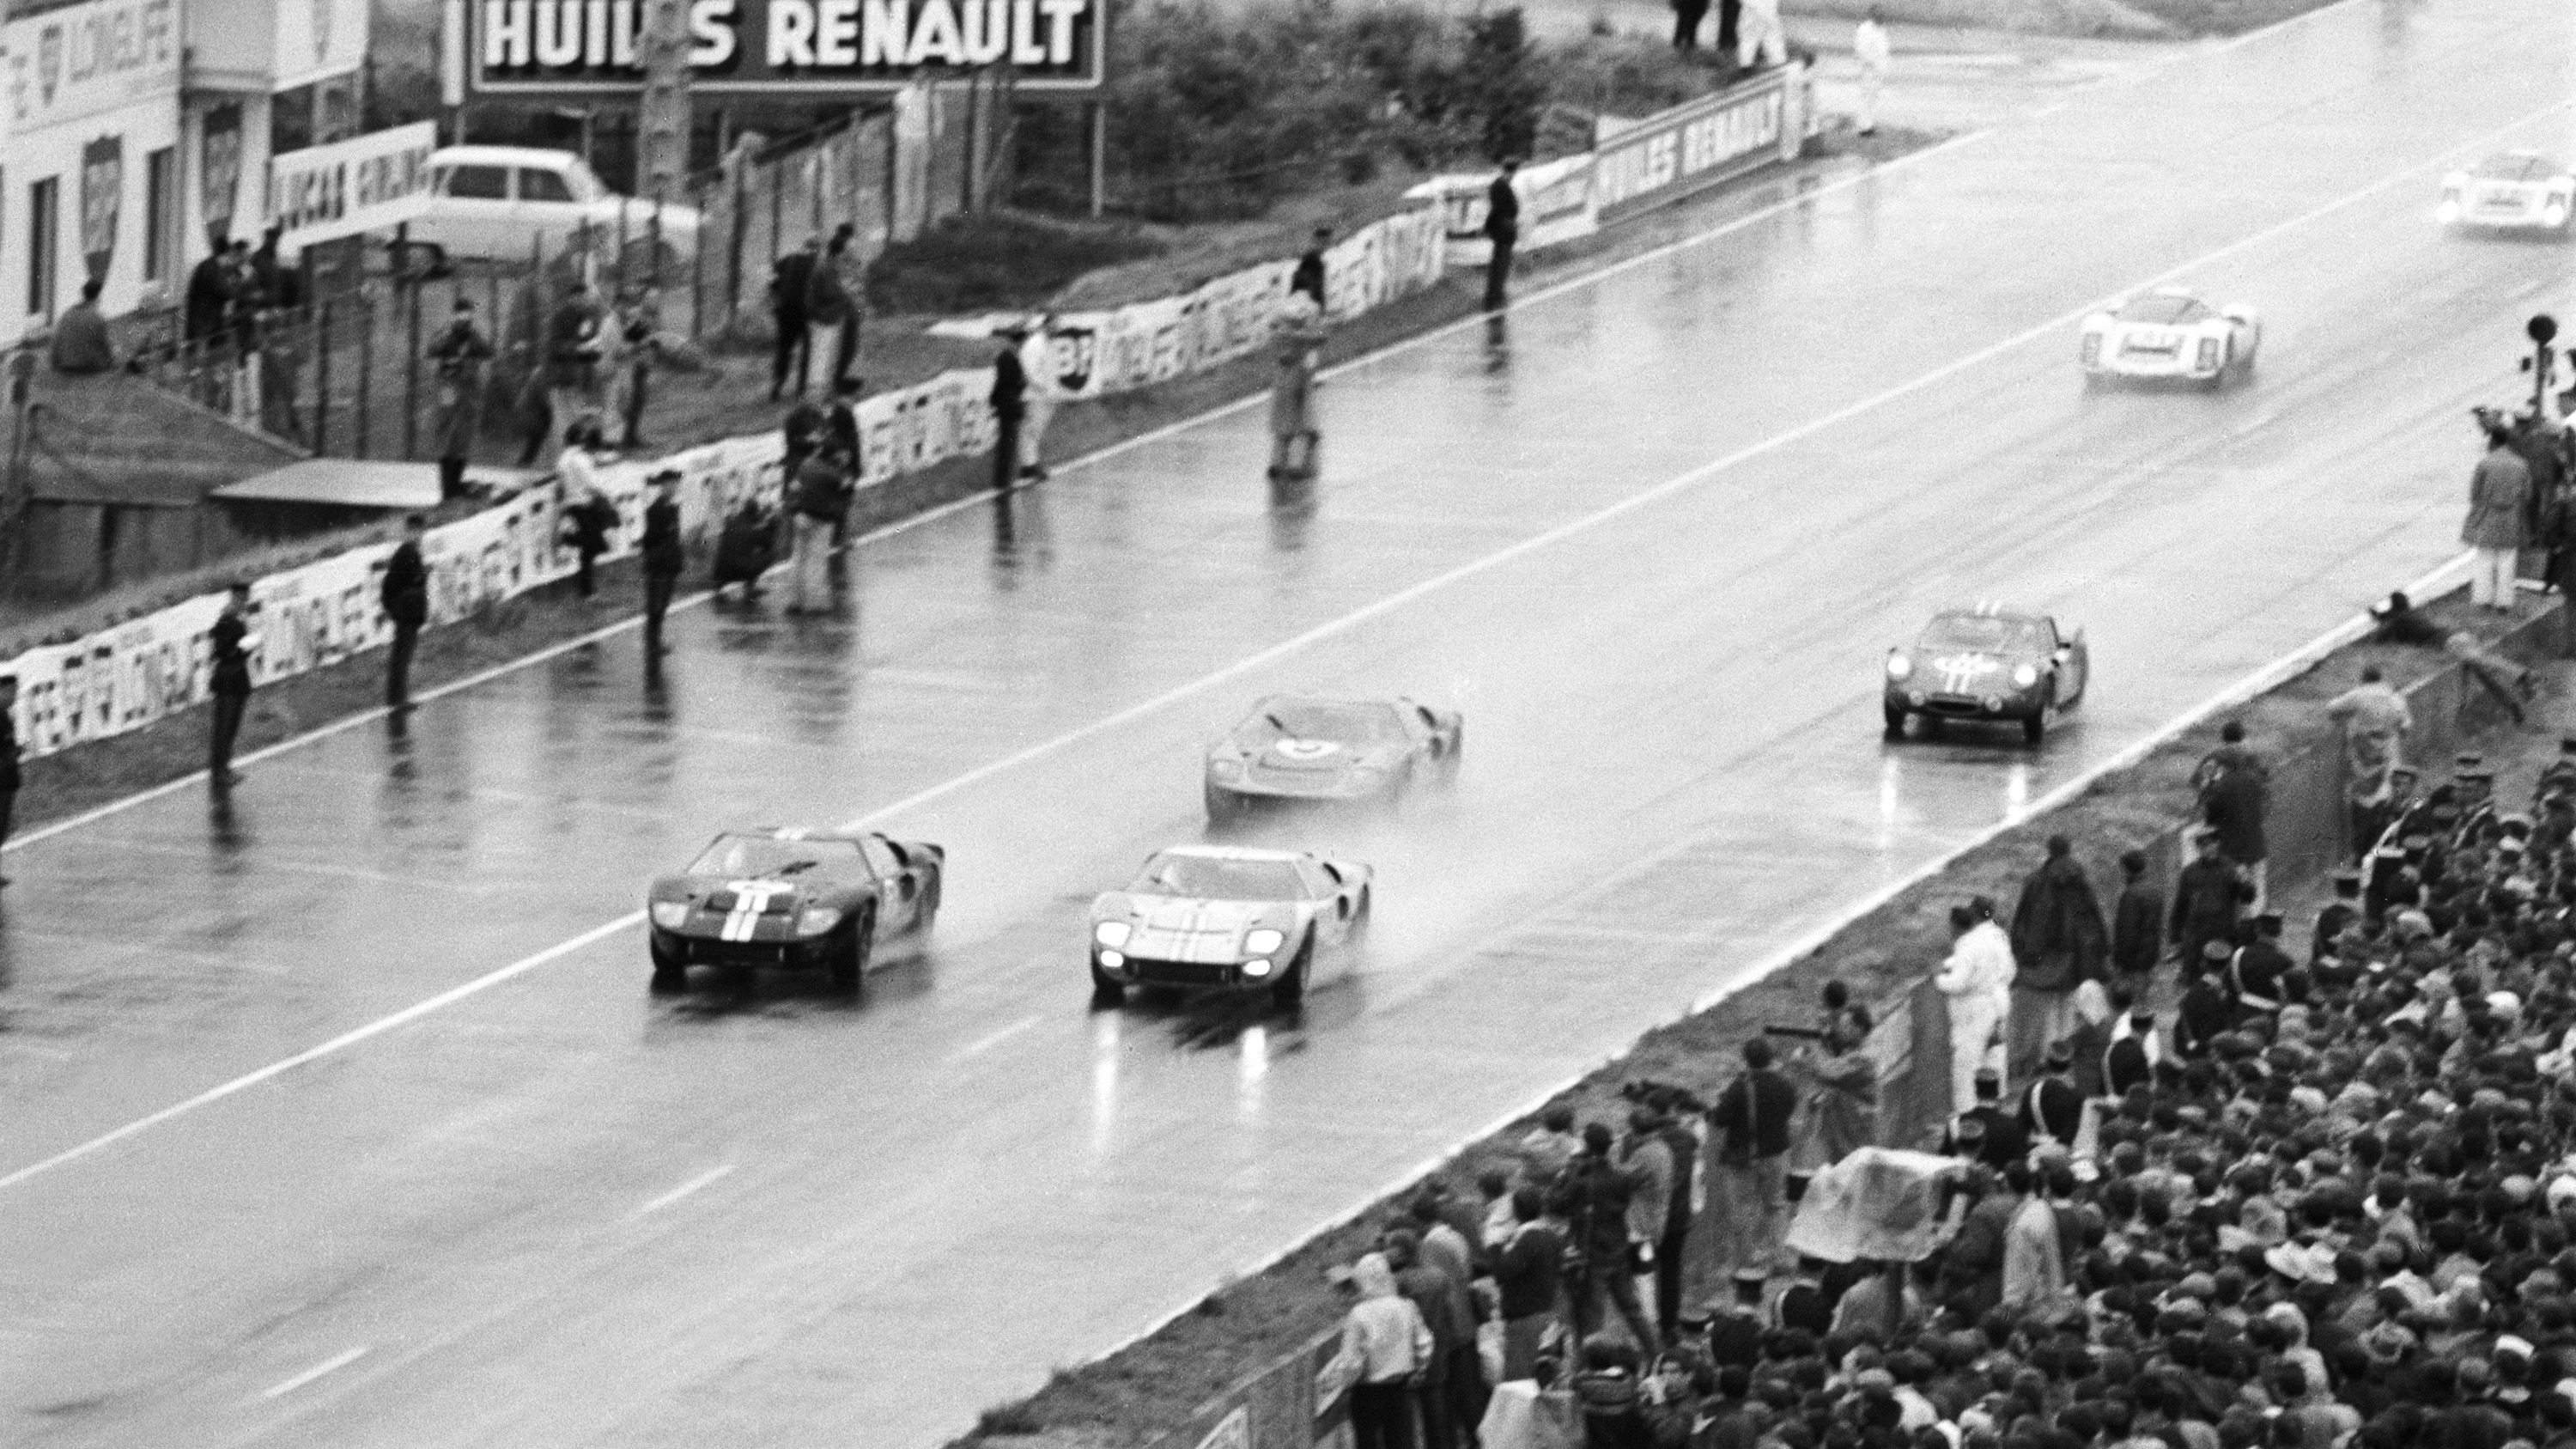 Photo A.032819 FORD GT40 KEN MILES DAN GURNEY 24H LE MANS START RACE 1966 